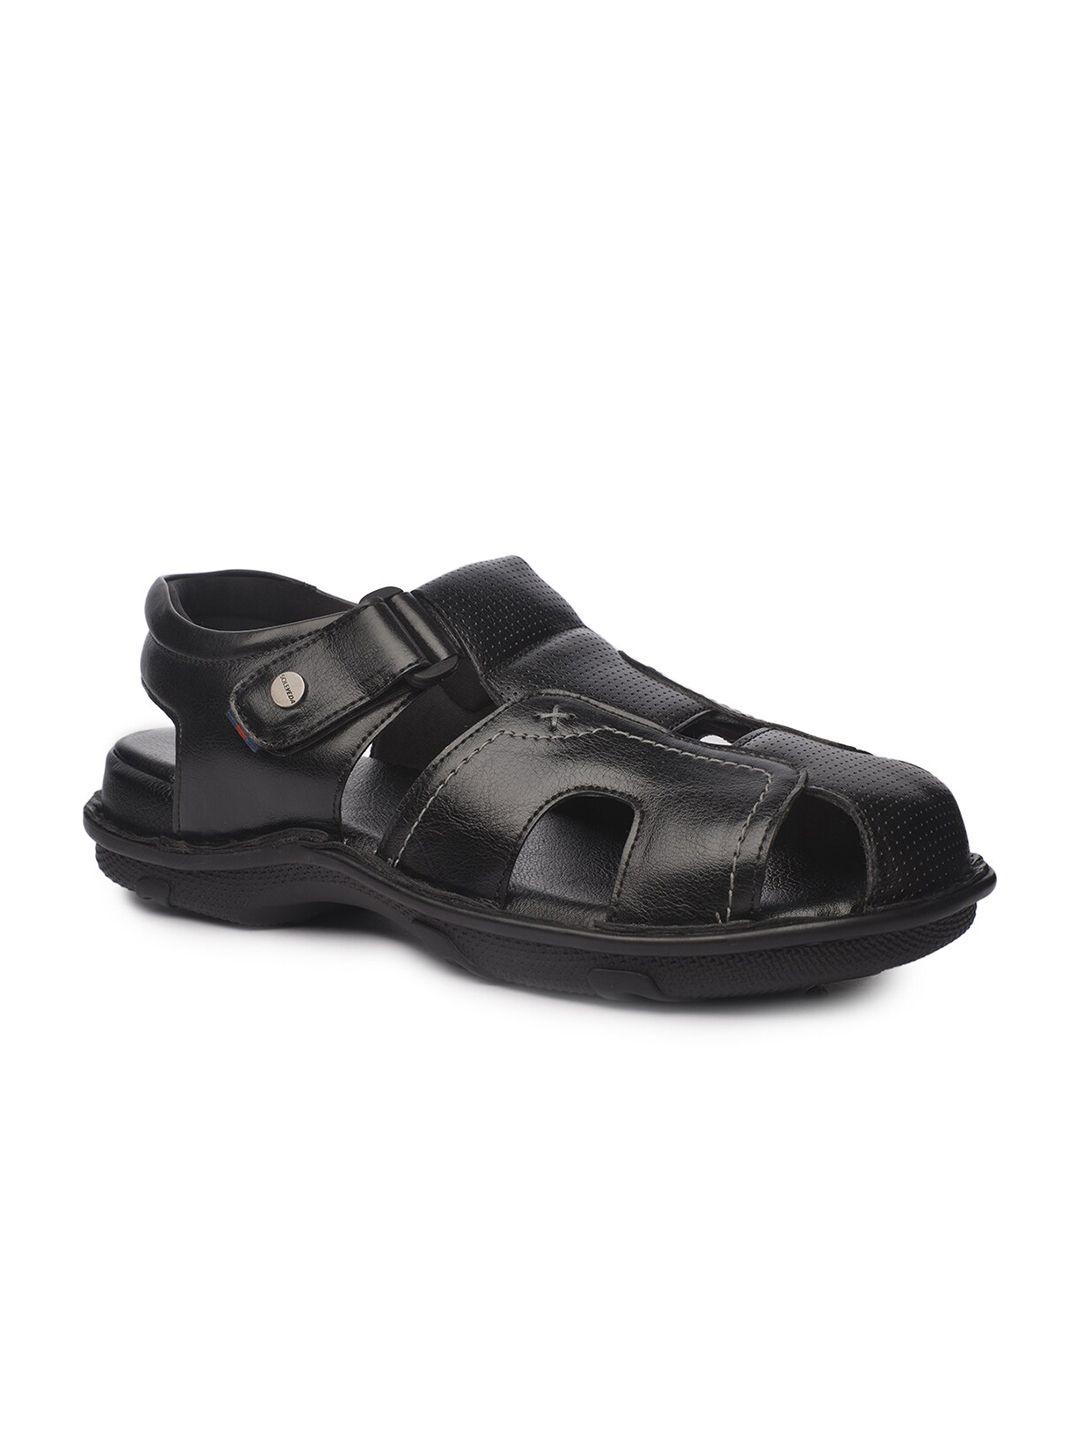 buckaroo men textured comfort sandals